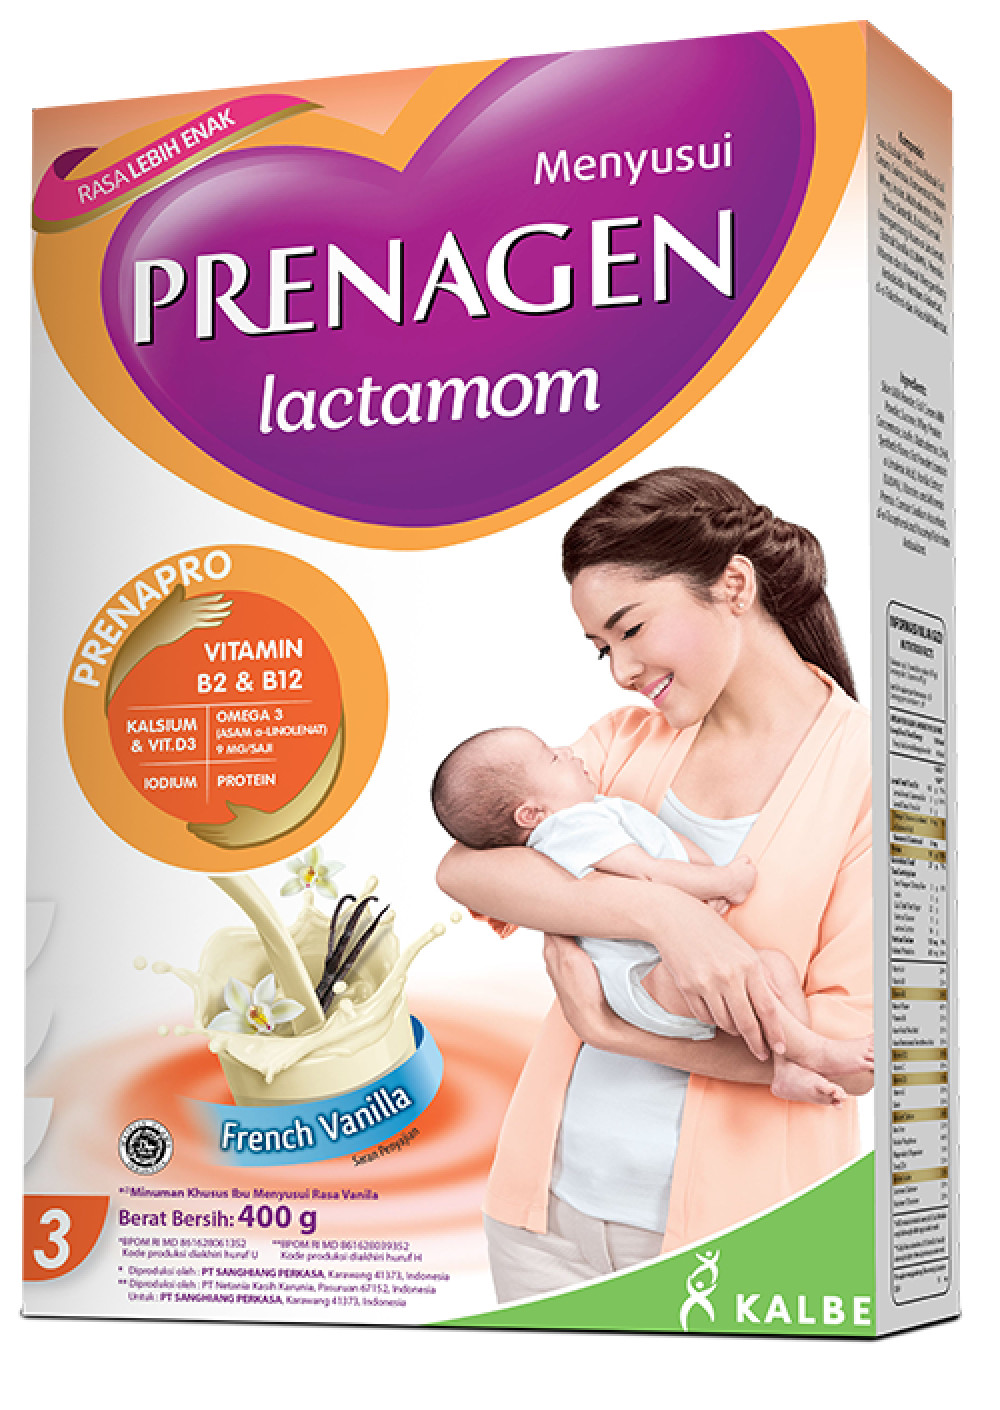 Prenagen Lactamom Susu Yang Bagus Bagi Ibu Menyusui Prenagen